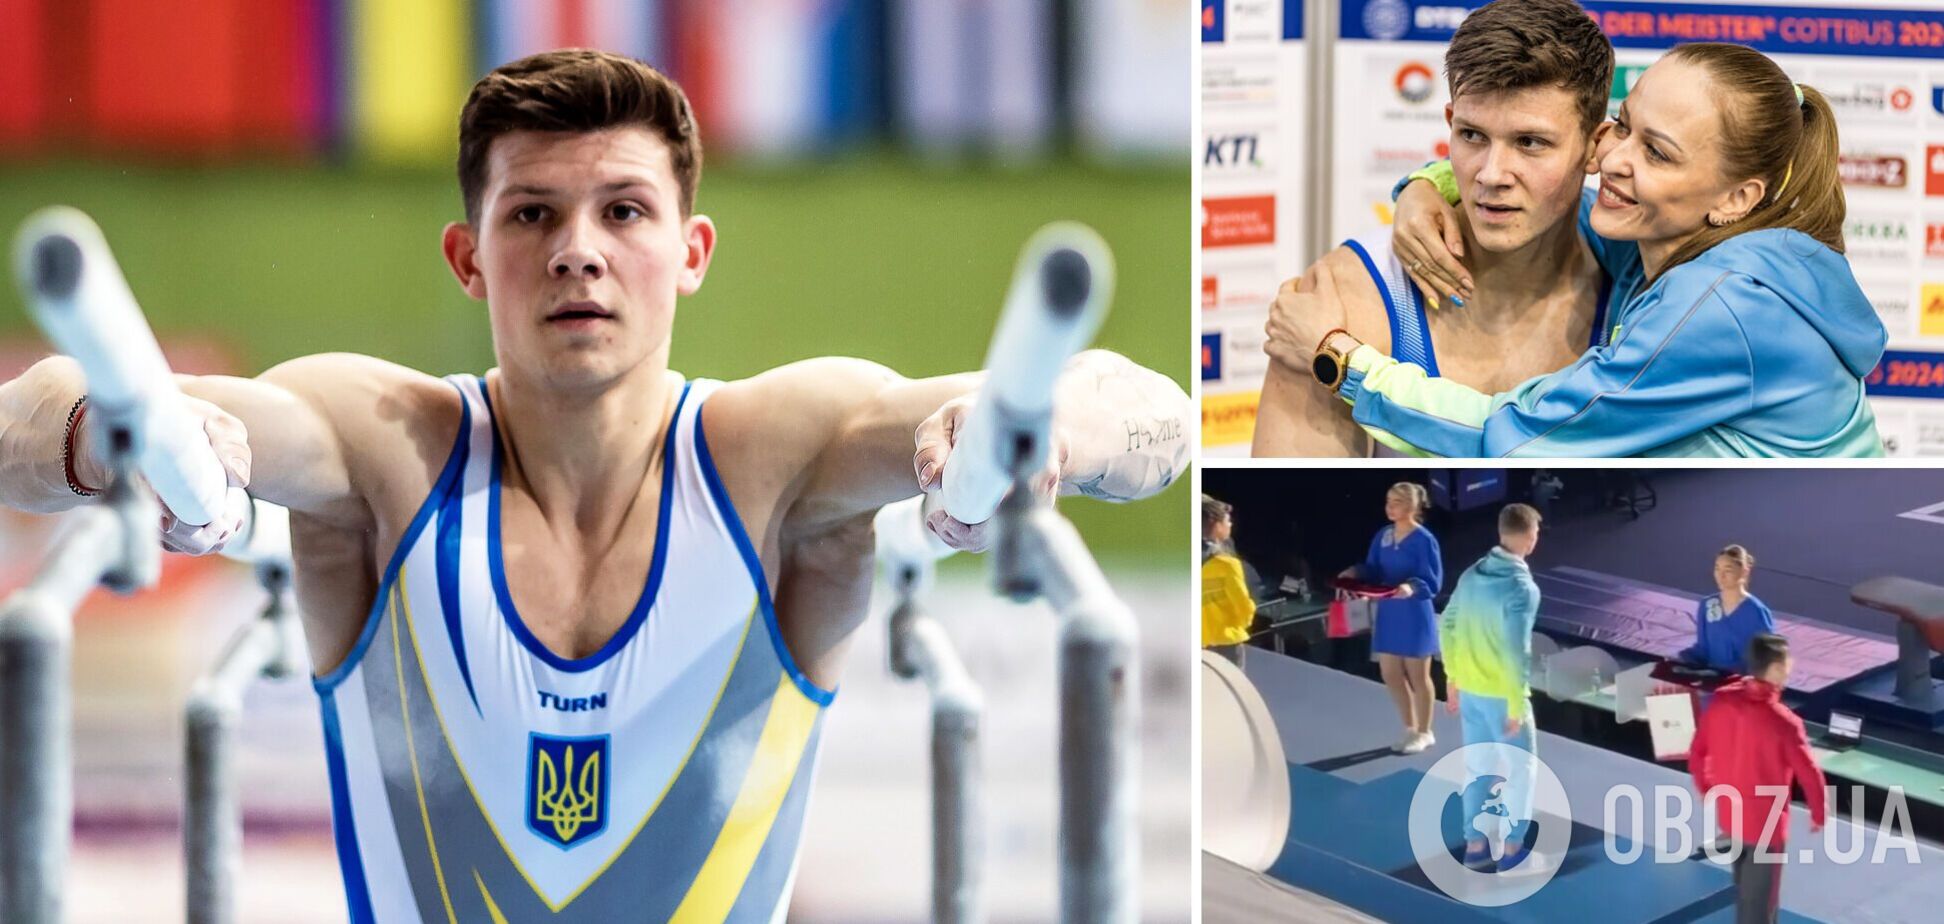 Український гімнаст виборов 'золото' Кубку світу, обійшовши олімпійського чемпіона. Відео